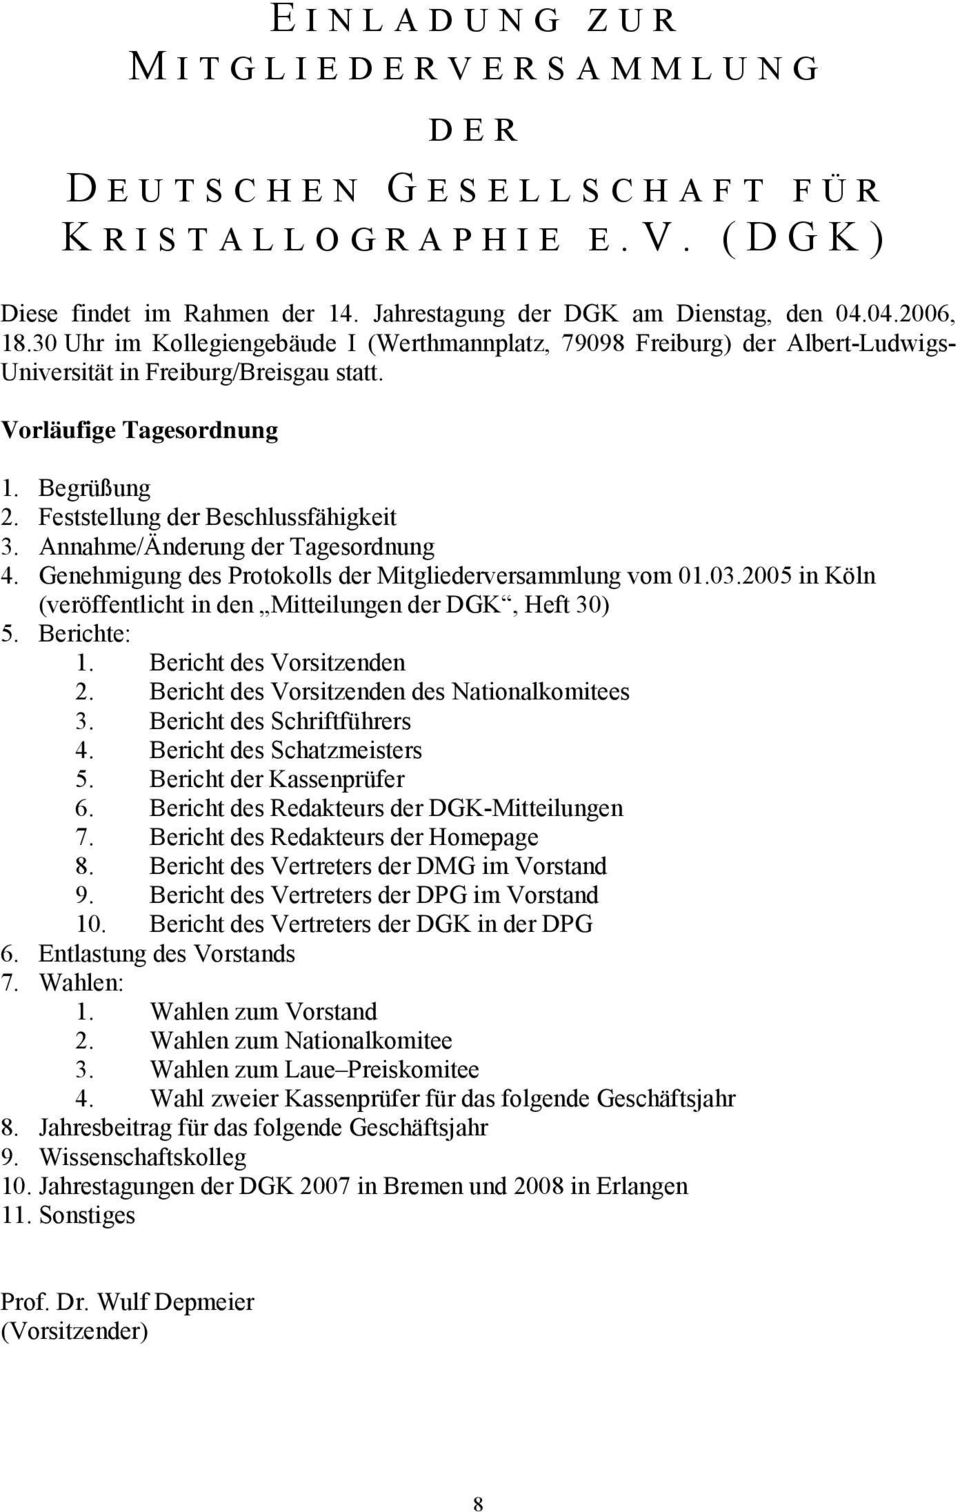 Annahme/Änderung der Tagesordnung 4. Genehmigung des Protokolls der Mitgliederversammlung vom 01.03.2005 in Köln (veröffentlicht in den Mitteilungen der DGK, Heft 30) 5. Berichte: 1.